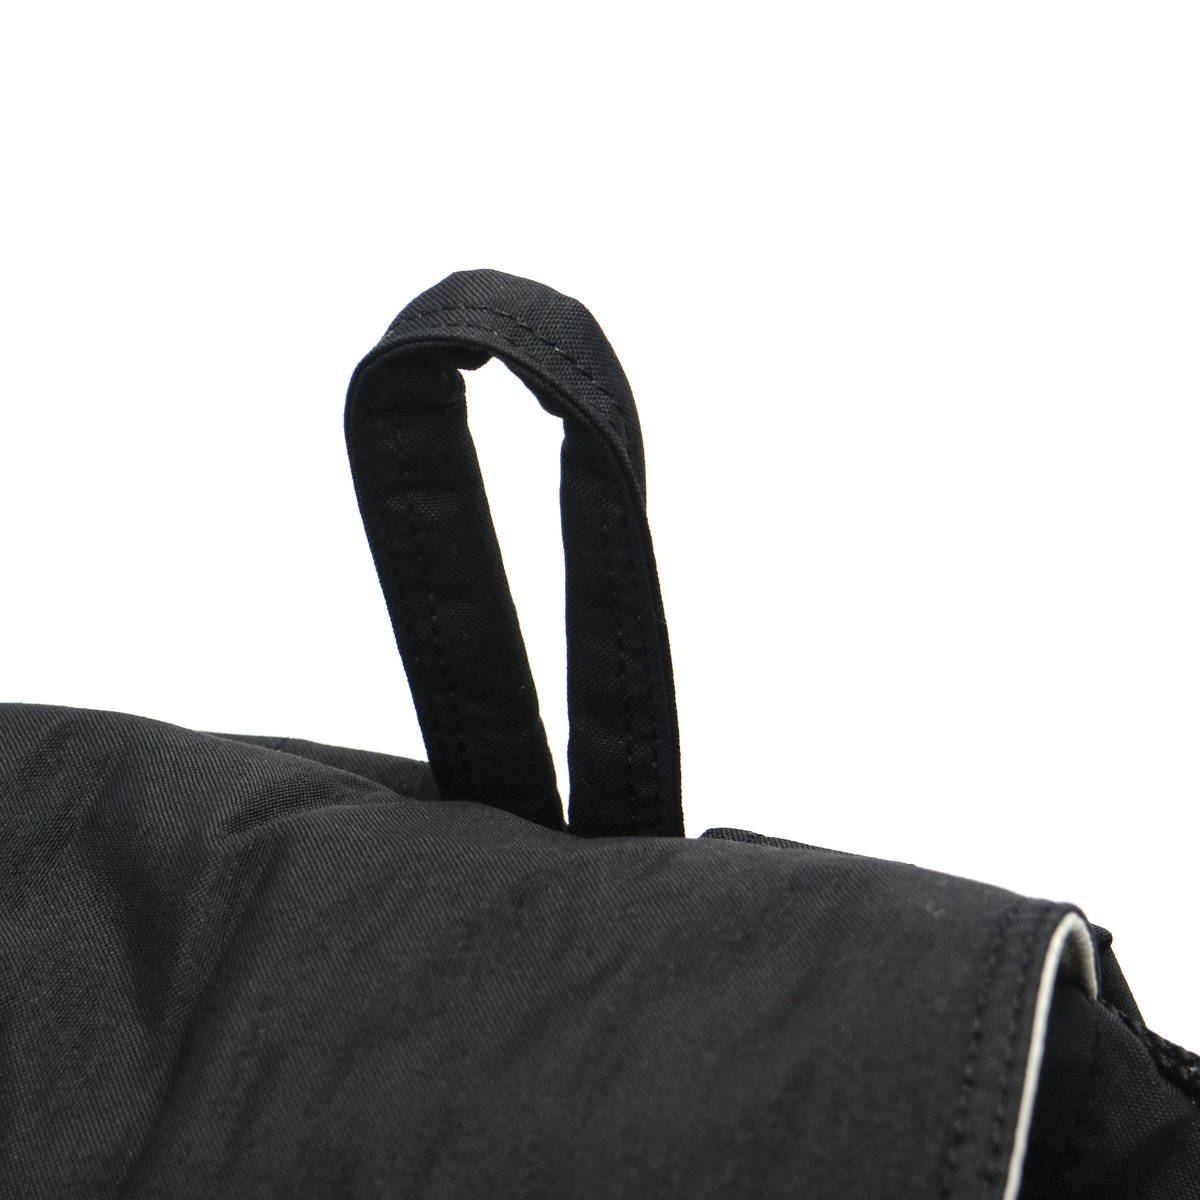 ポーター 吉田カバン／PORTER リュック バッグ バックパック メンズ 男性 男性用ナイロン ブラック 黒  656-06178 DRAFT RUCKSACK ドラフト 巾着型